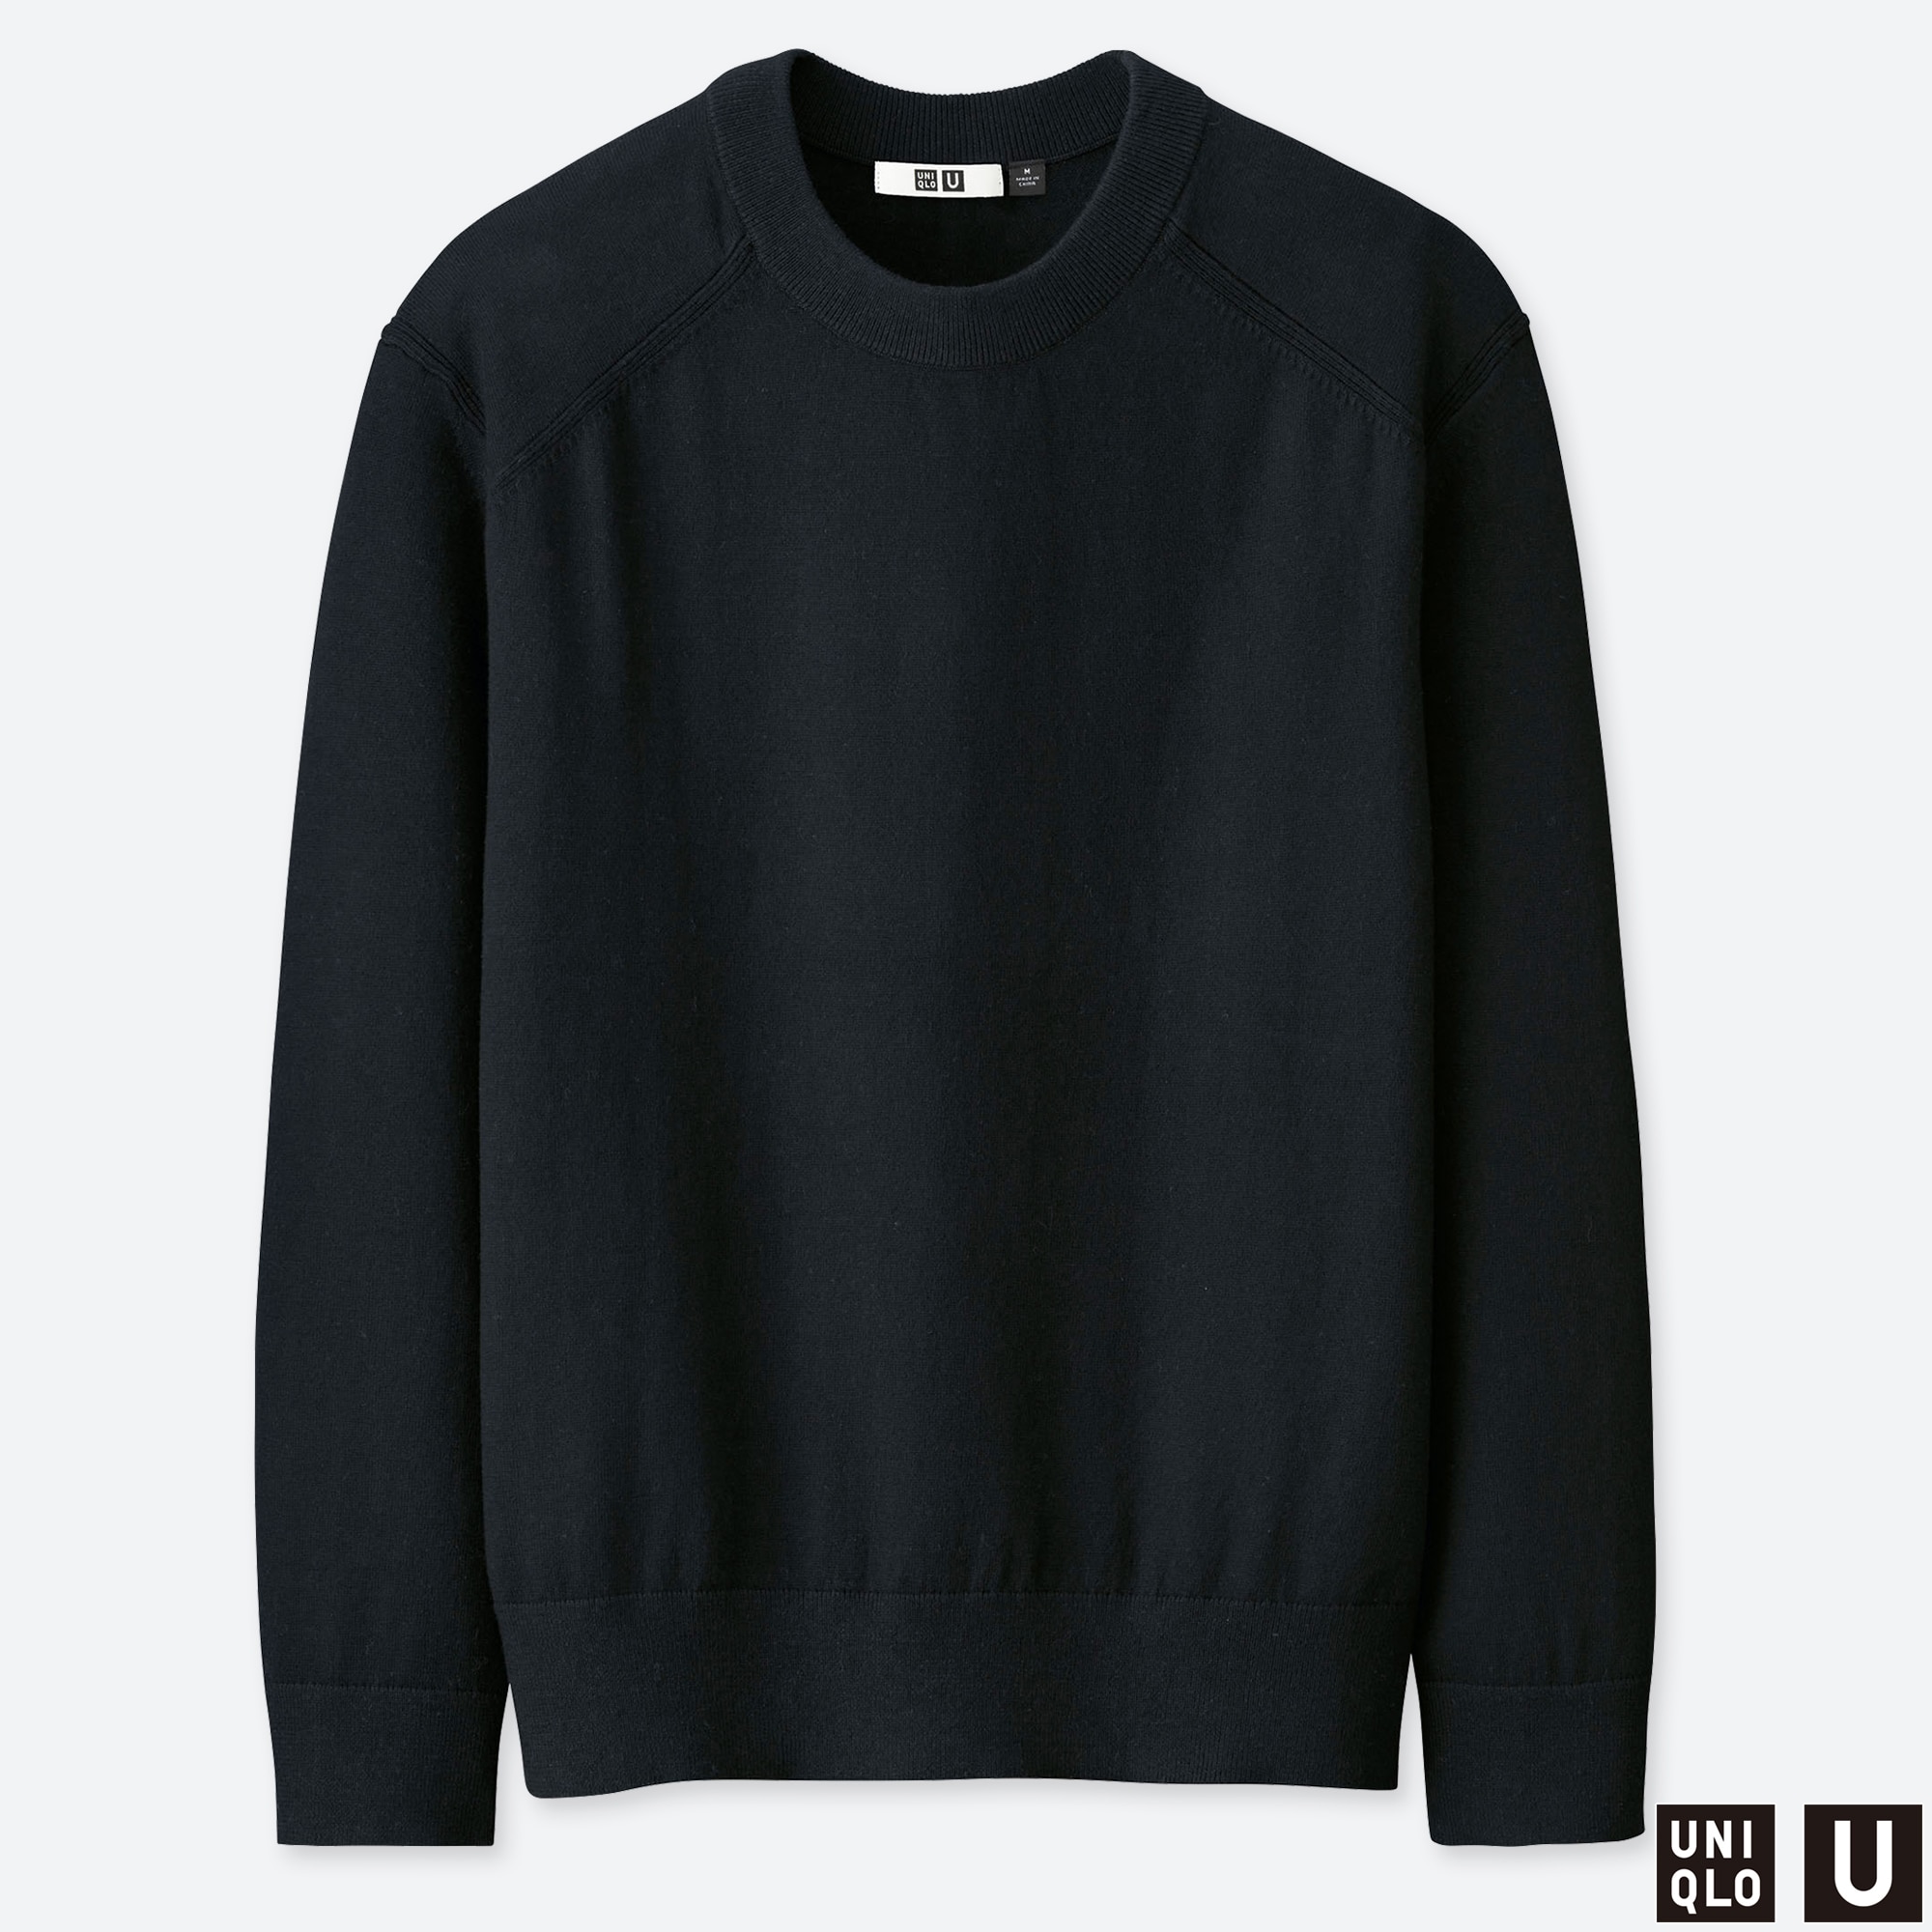 UNIQLOのウォッシャブルコットンメリノクルーネックセーター | StyleHint